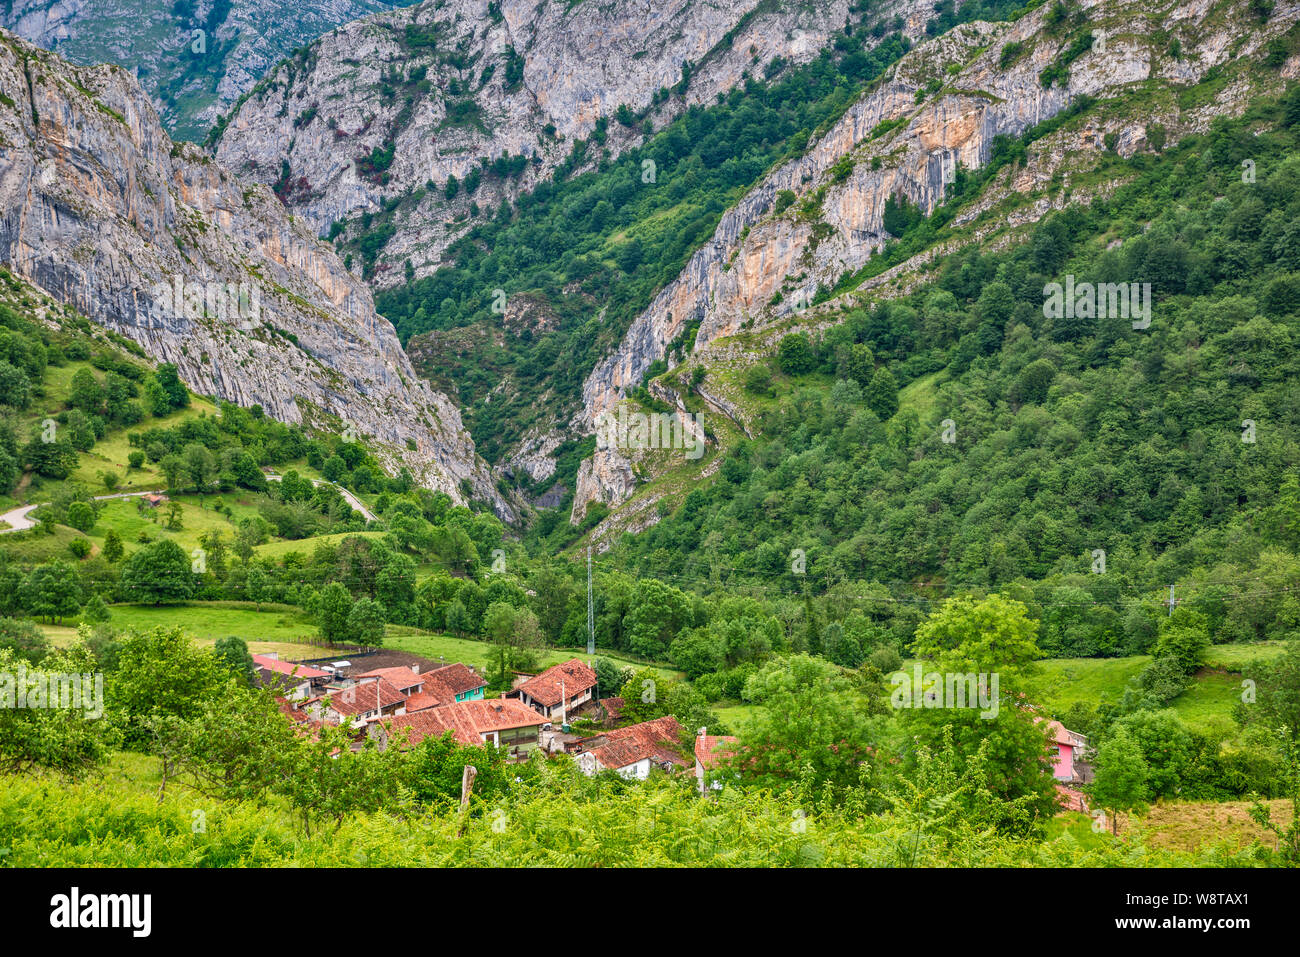 Village of Viego, Desfiladero de Beyos (Los Beyos Defile) in distance, foothills of Picos de Europa, Ponga Natural Park, Asturias, Spain Stock Photo